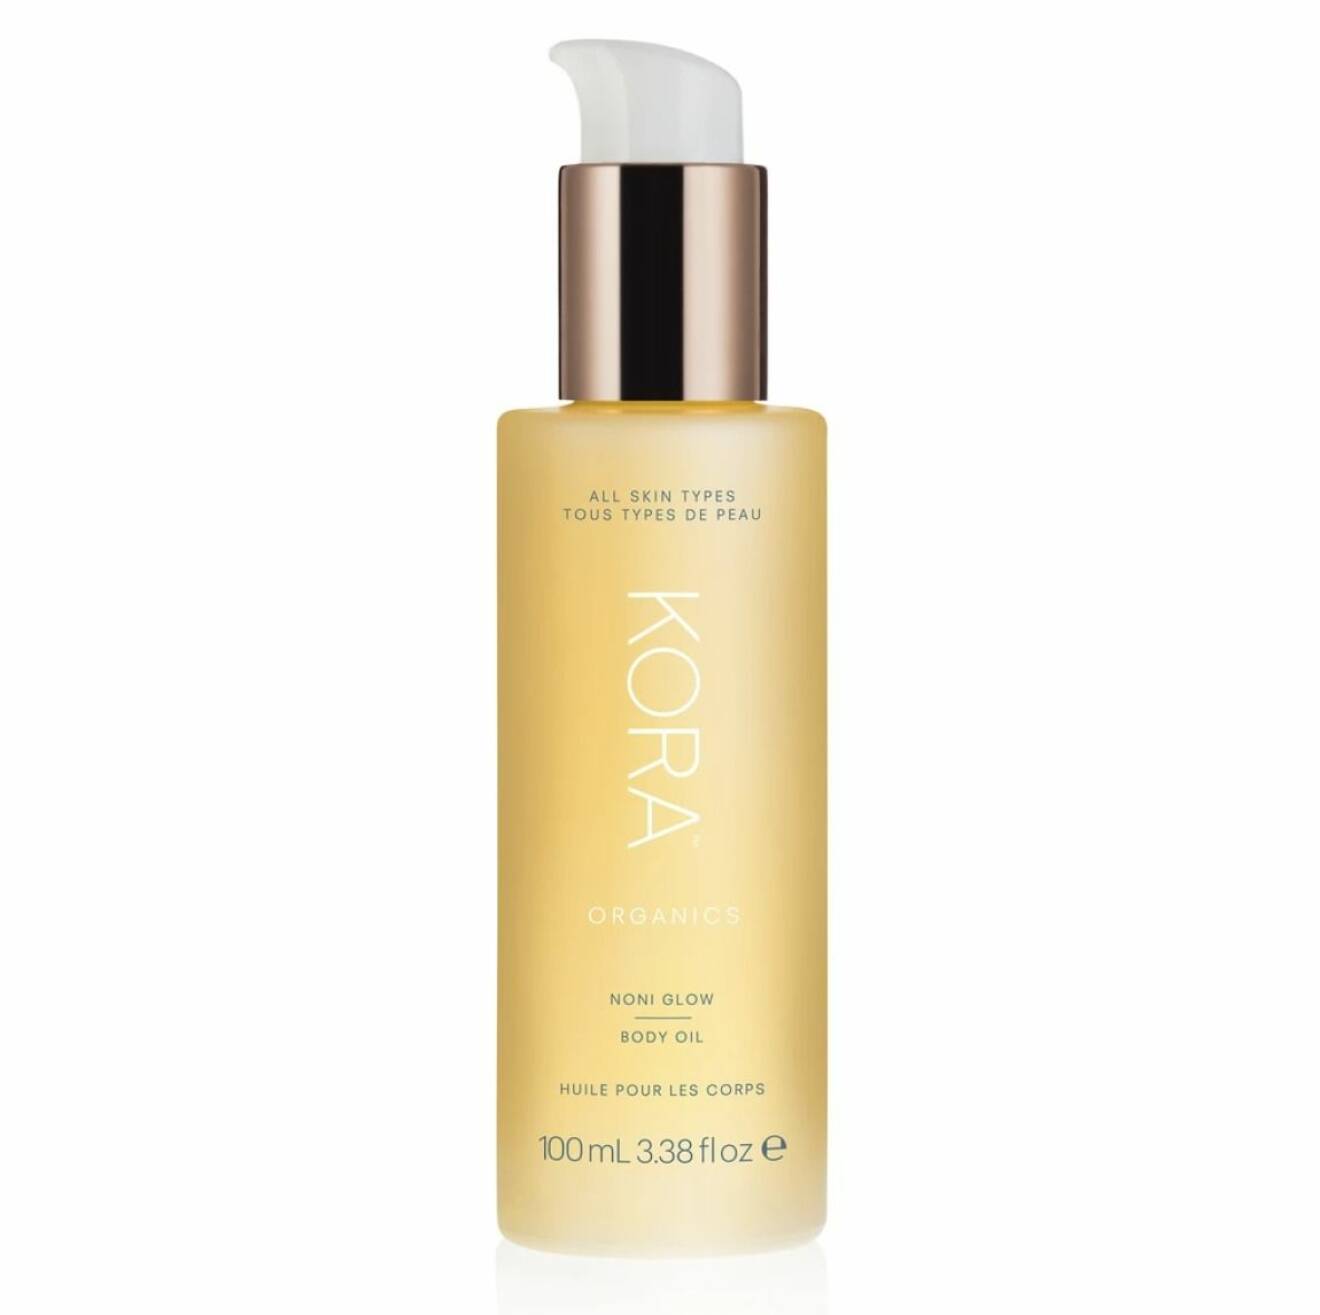 Noni glow body oil från Kora organics är kroppsoljan som enkelt och smidigt absorberas av torr hud.